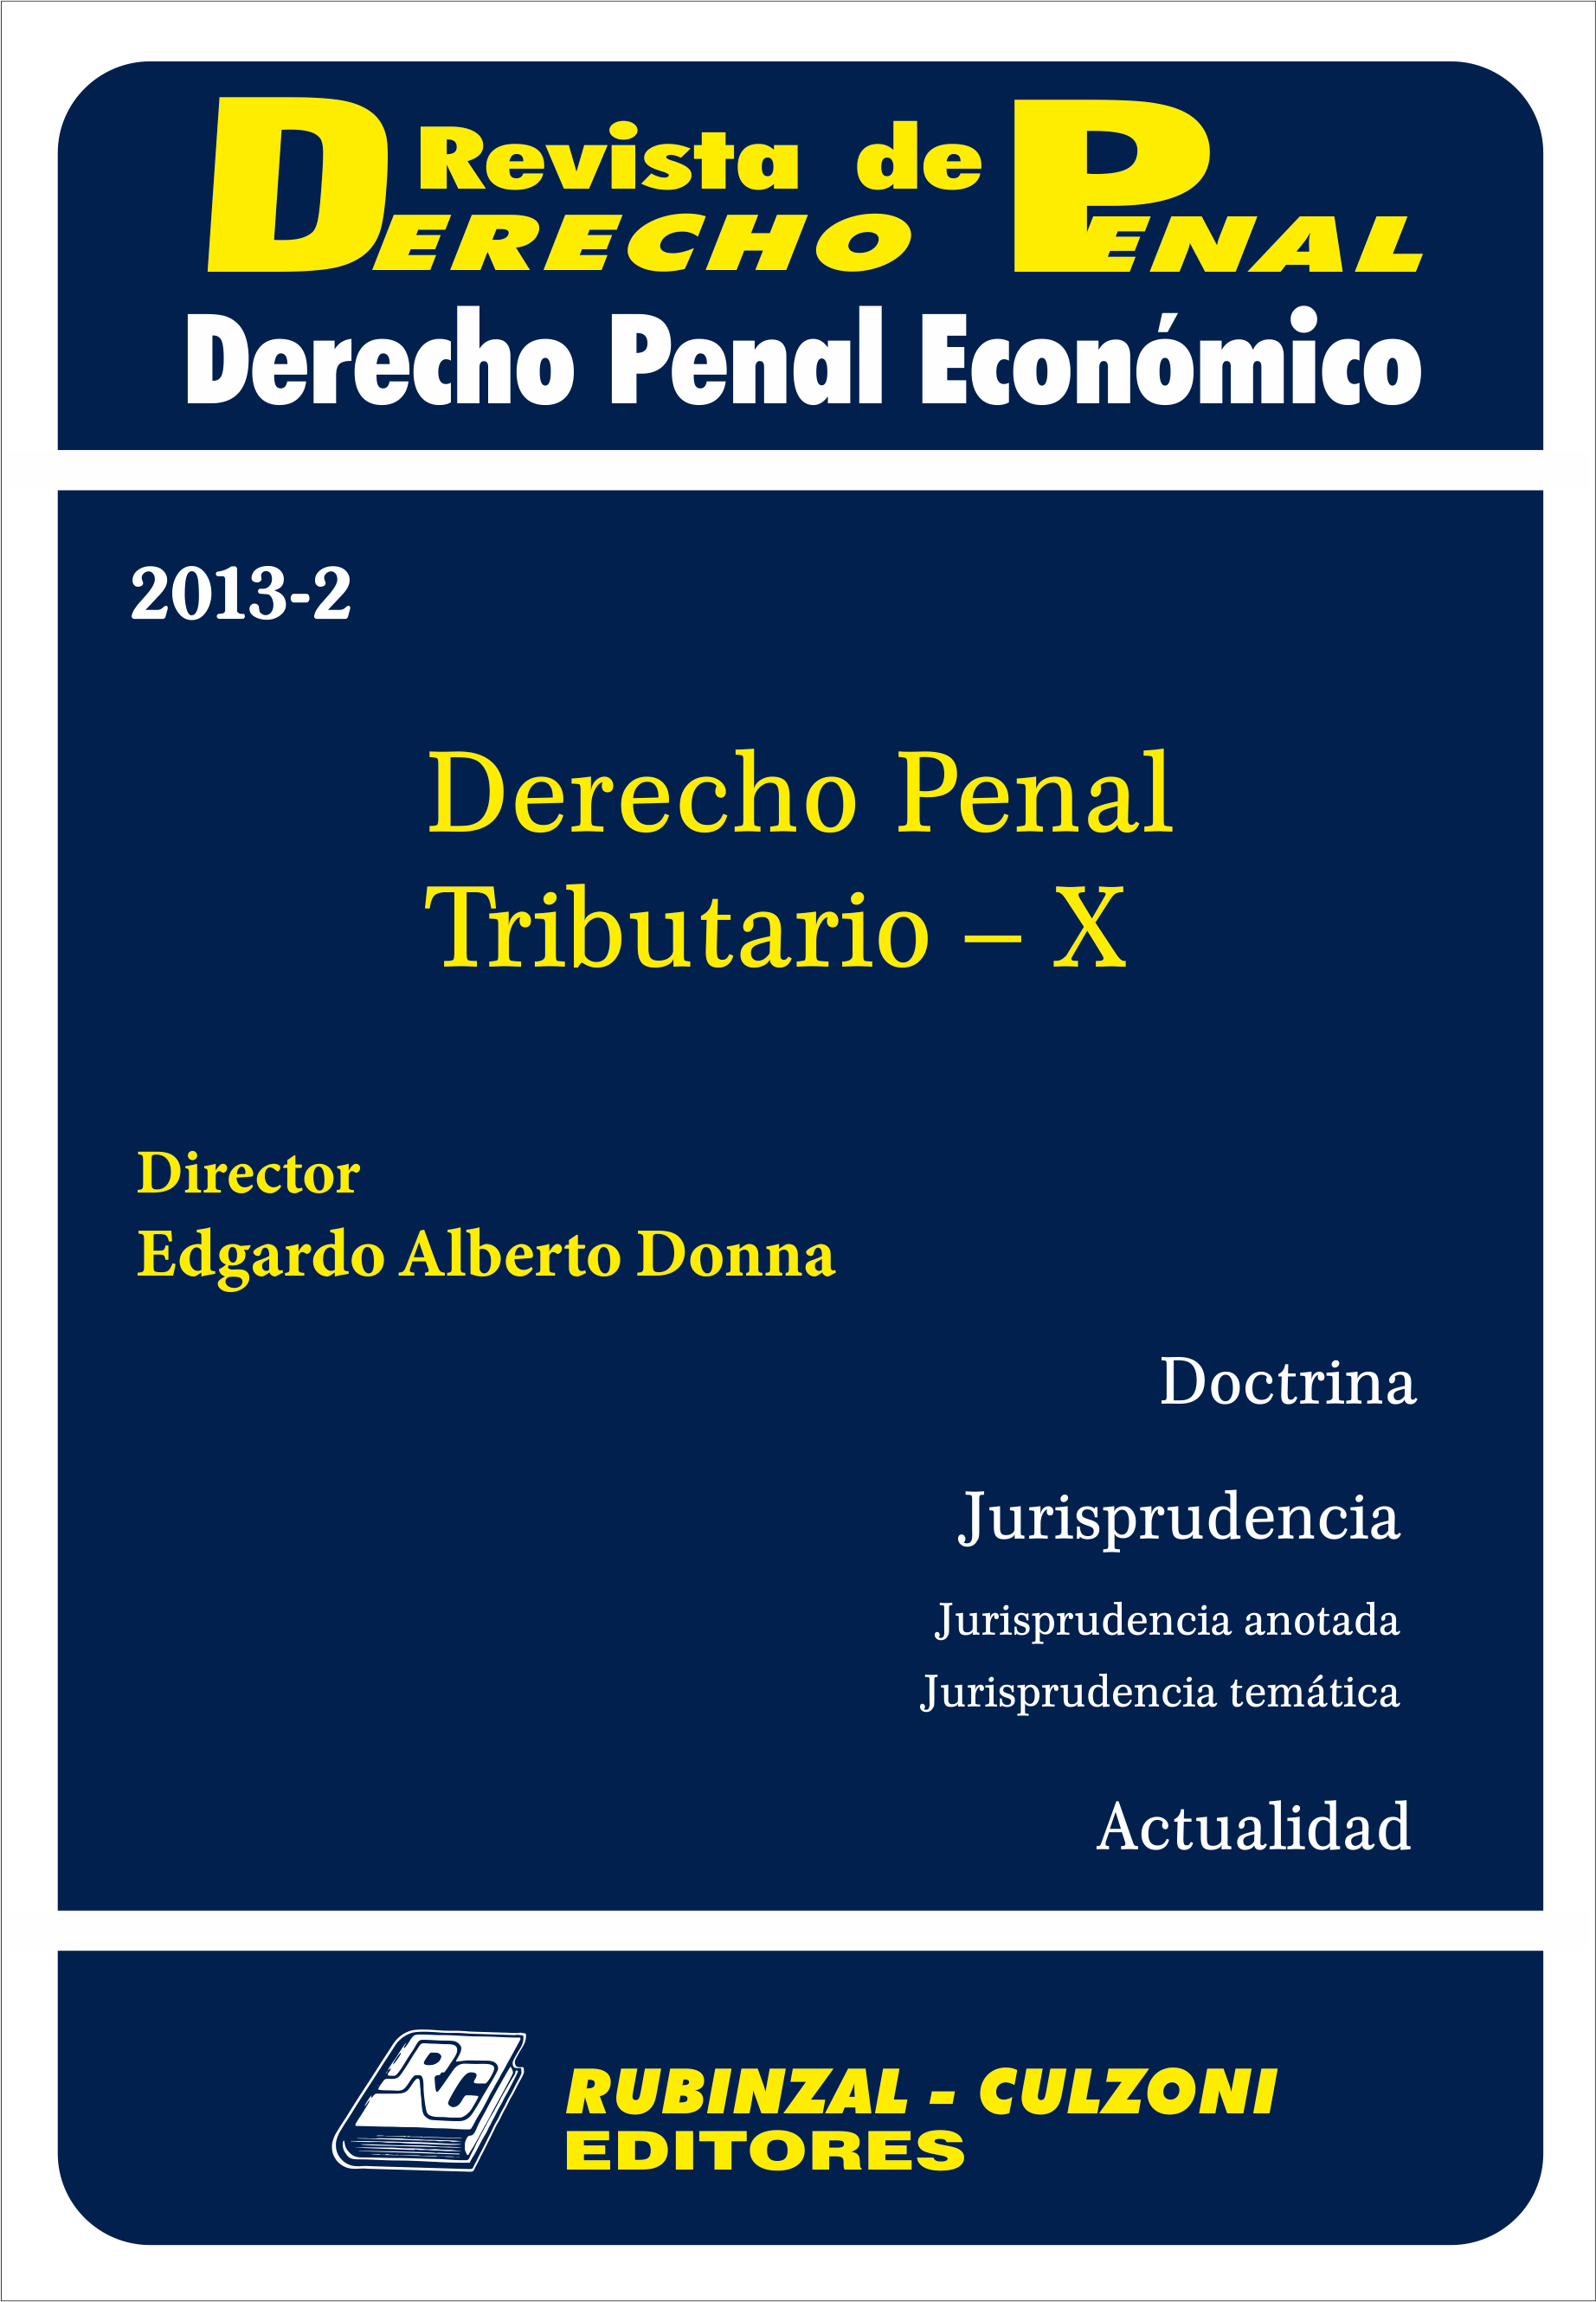 Revista de Derecho Penal Económico - Derecho Penal Tributario - X.